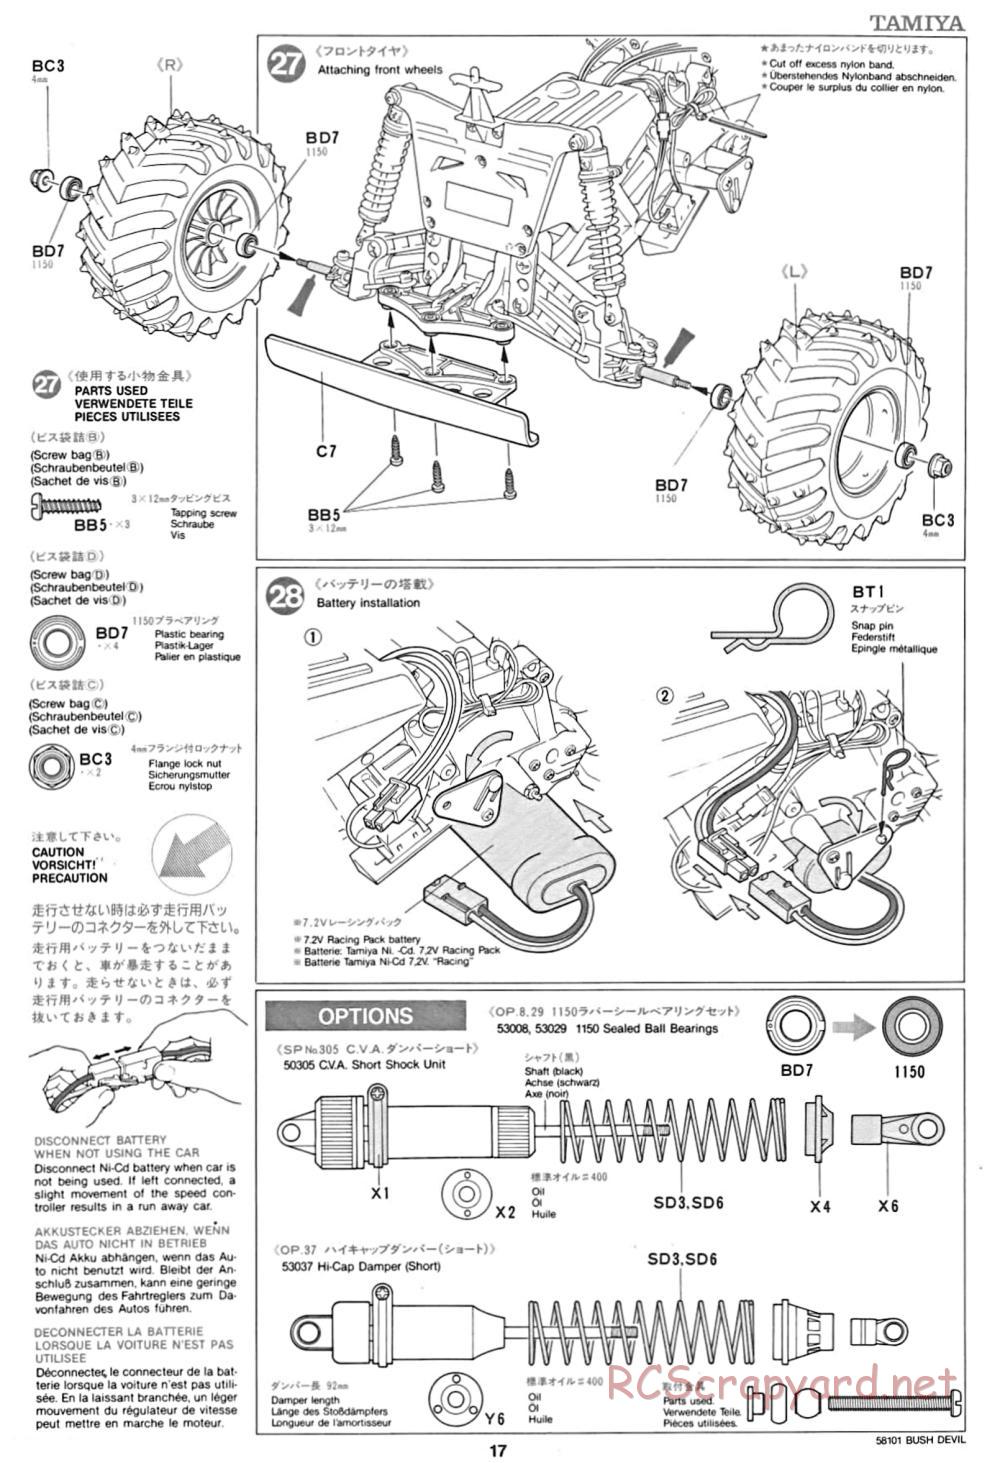 Tamiya - Bush Devil Chassis - Manual - Page 17